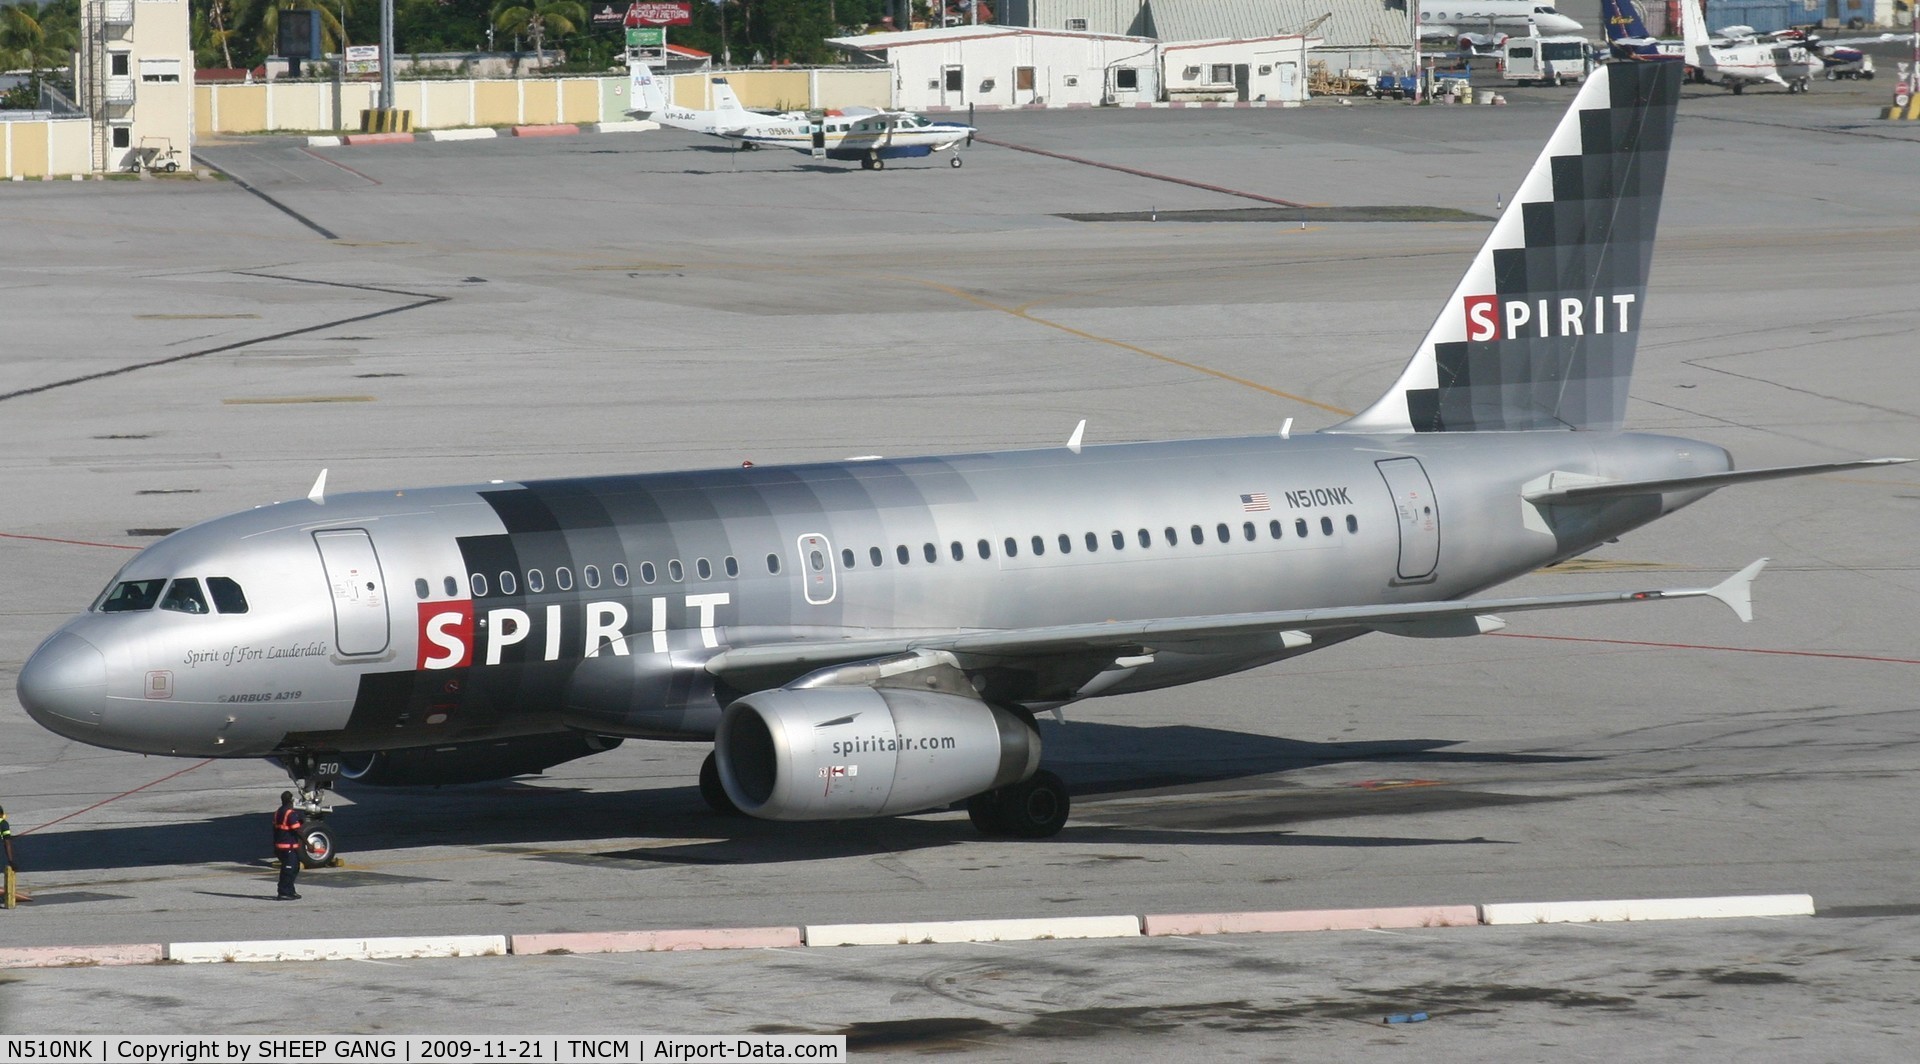 N510NK, 2005 Airbus A319-132 C/N 2622, n510nk spirit wings at the gate